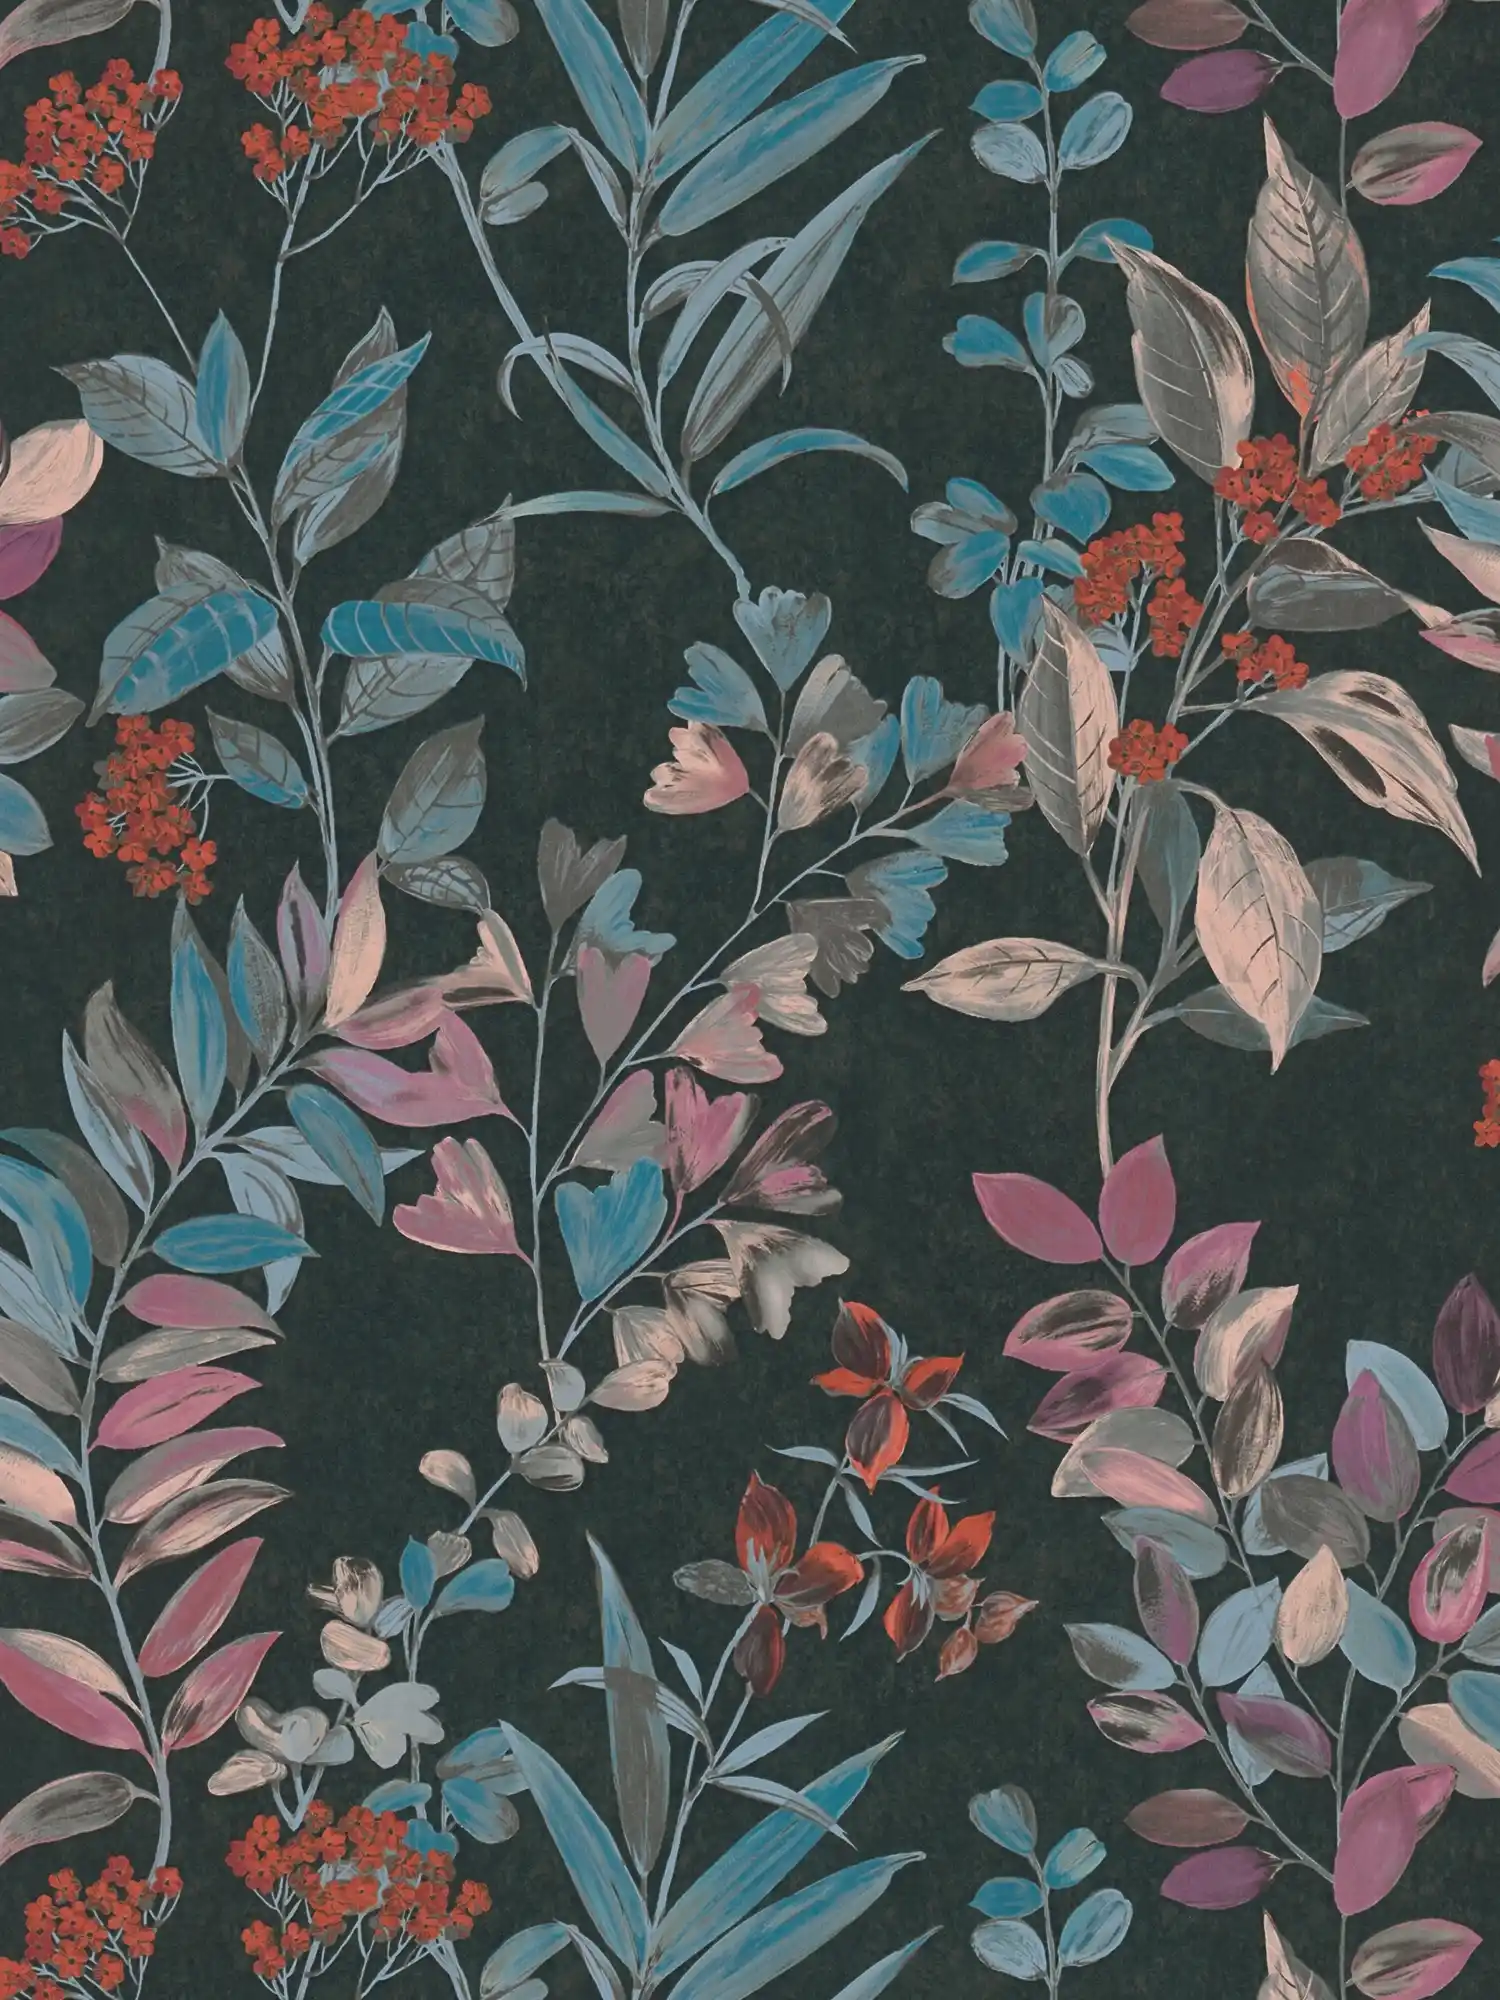         Papel pintado tejido-no tejido con motivos florales - multicolor, negro, azul
    